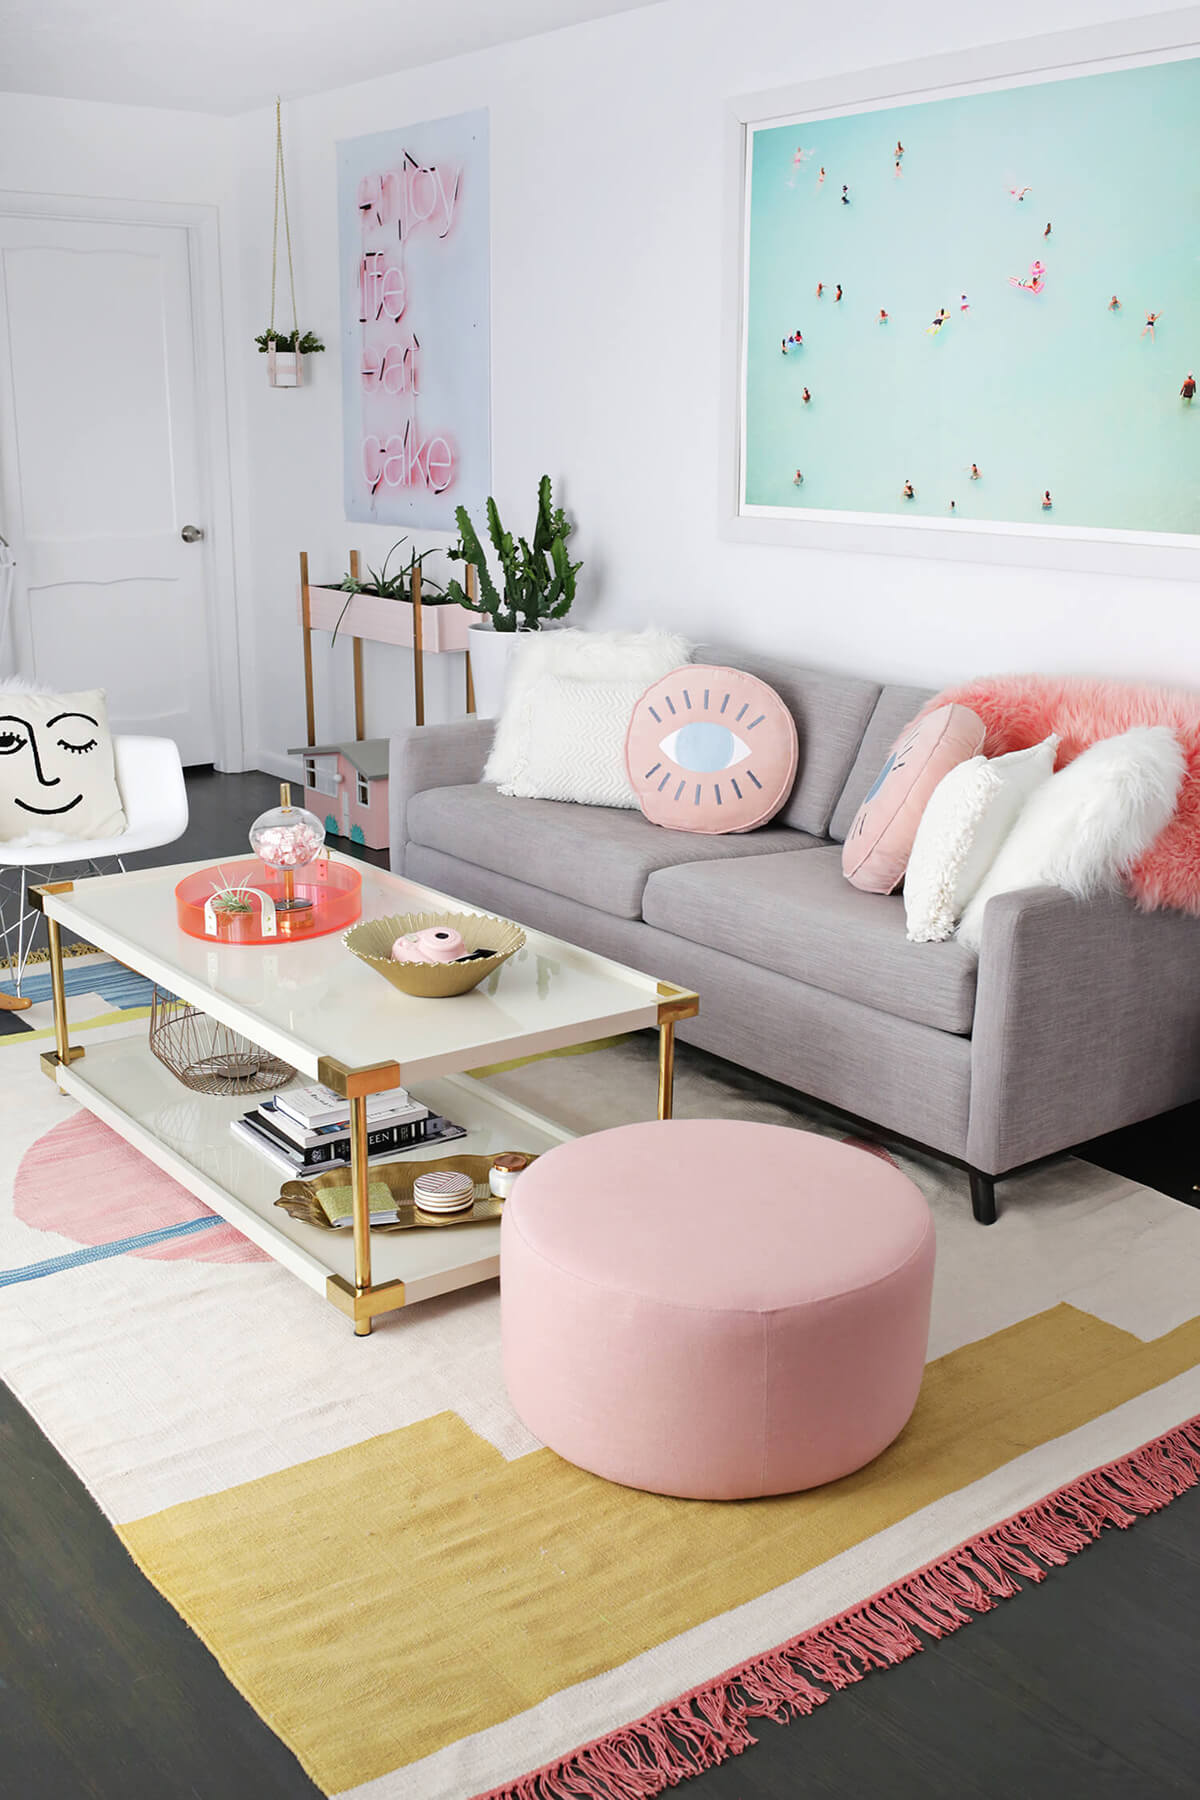 A Contemporary Colorful Living Room Design